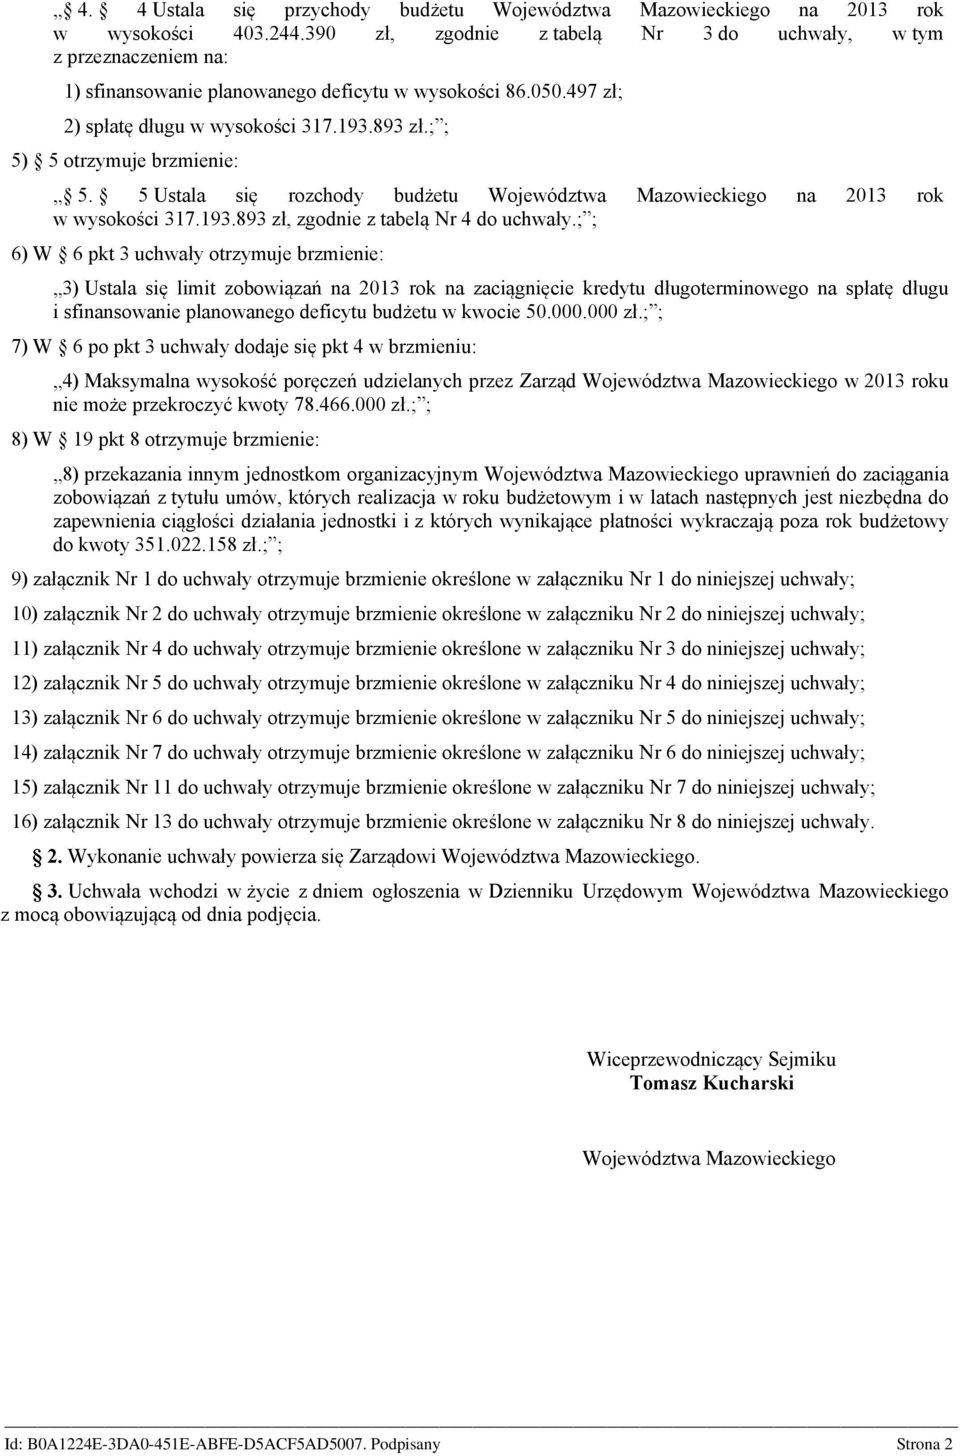 ; ; 5) 5 otrzymuje brzmienie: 5. 5 Ustala się rozchody budżetu Województwa Mazowieckiego na 2013 rok w wysokości 317.193.893 zł, zgodnie z tabelą Nr 4 do uchwały.